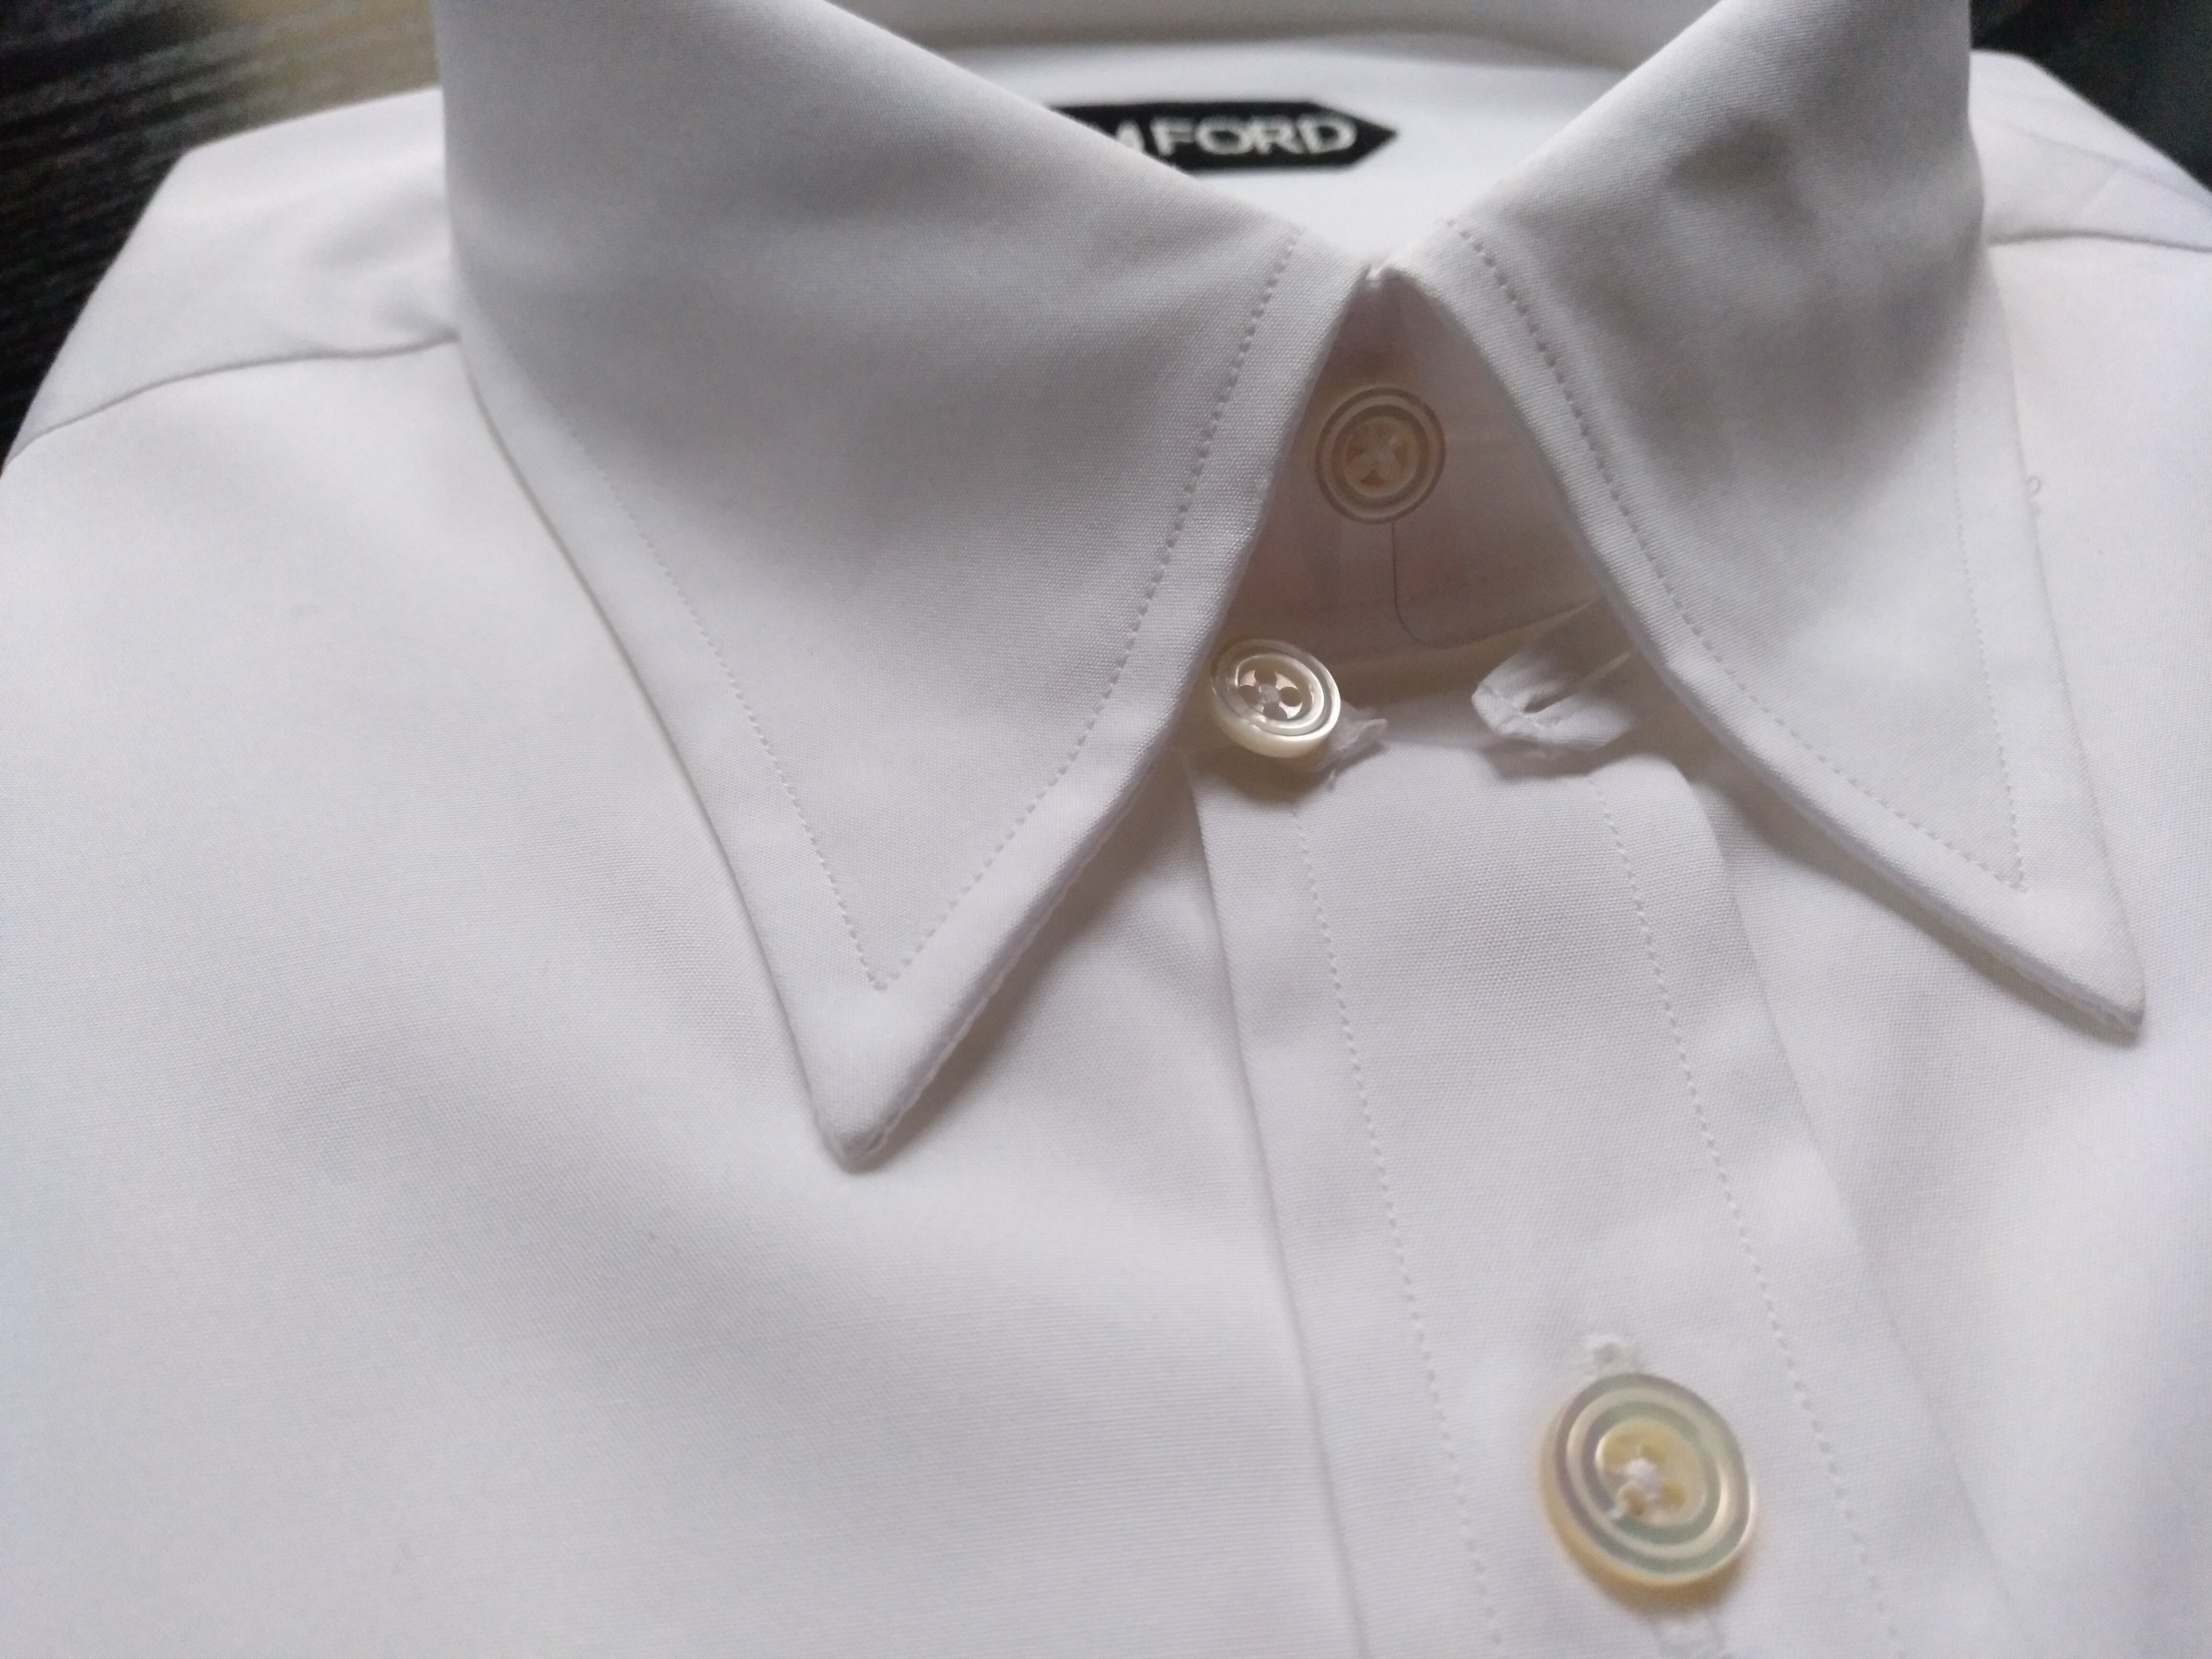 Roux par Badeværelse FS: TF NTTD Tab Collar Shirt Cocktail Cuff Size 41 NWT New&Unworn — ajb007